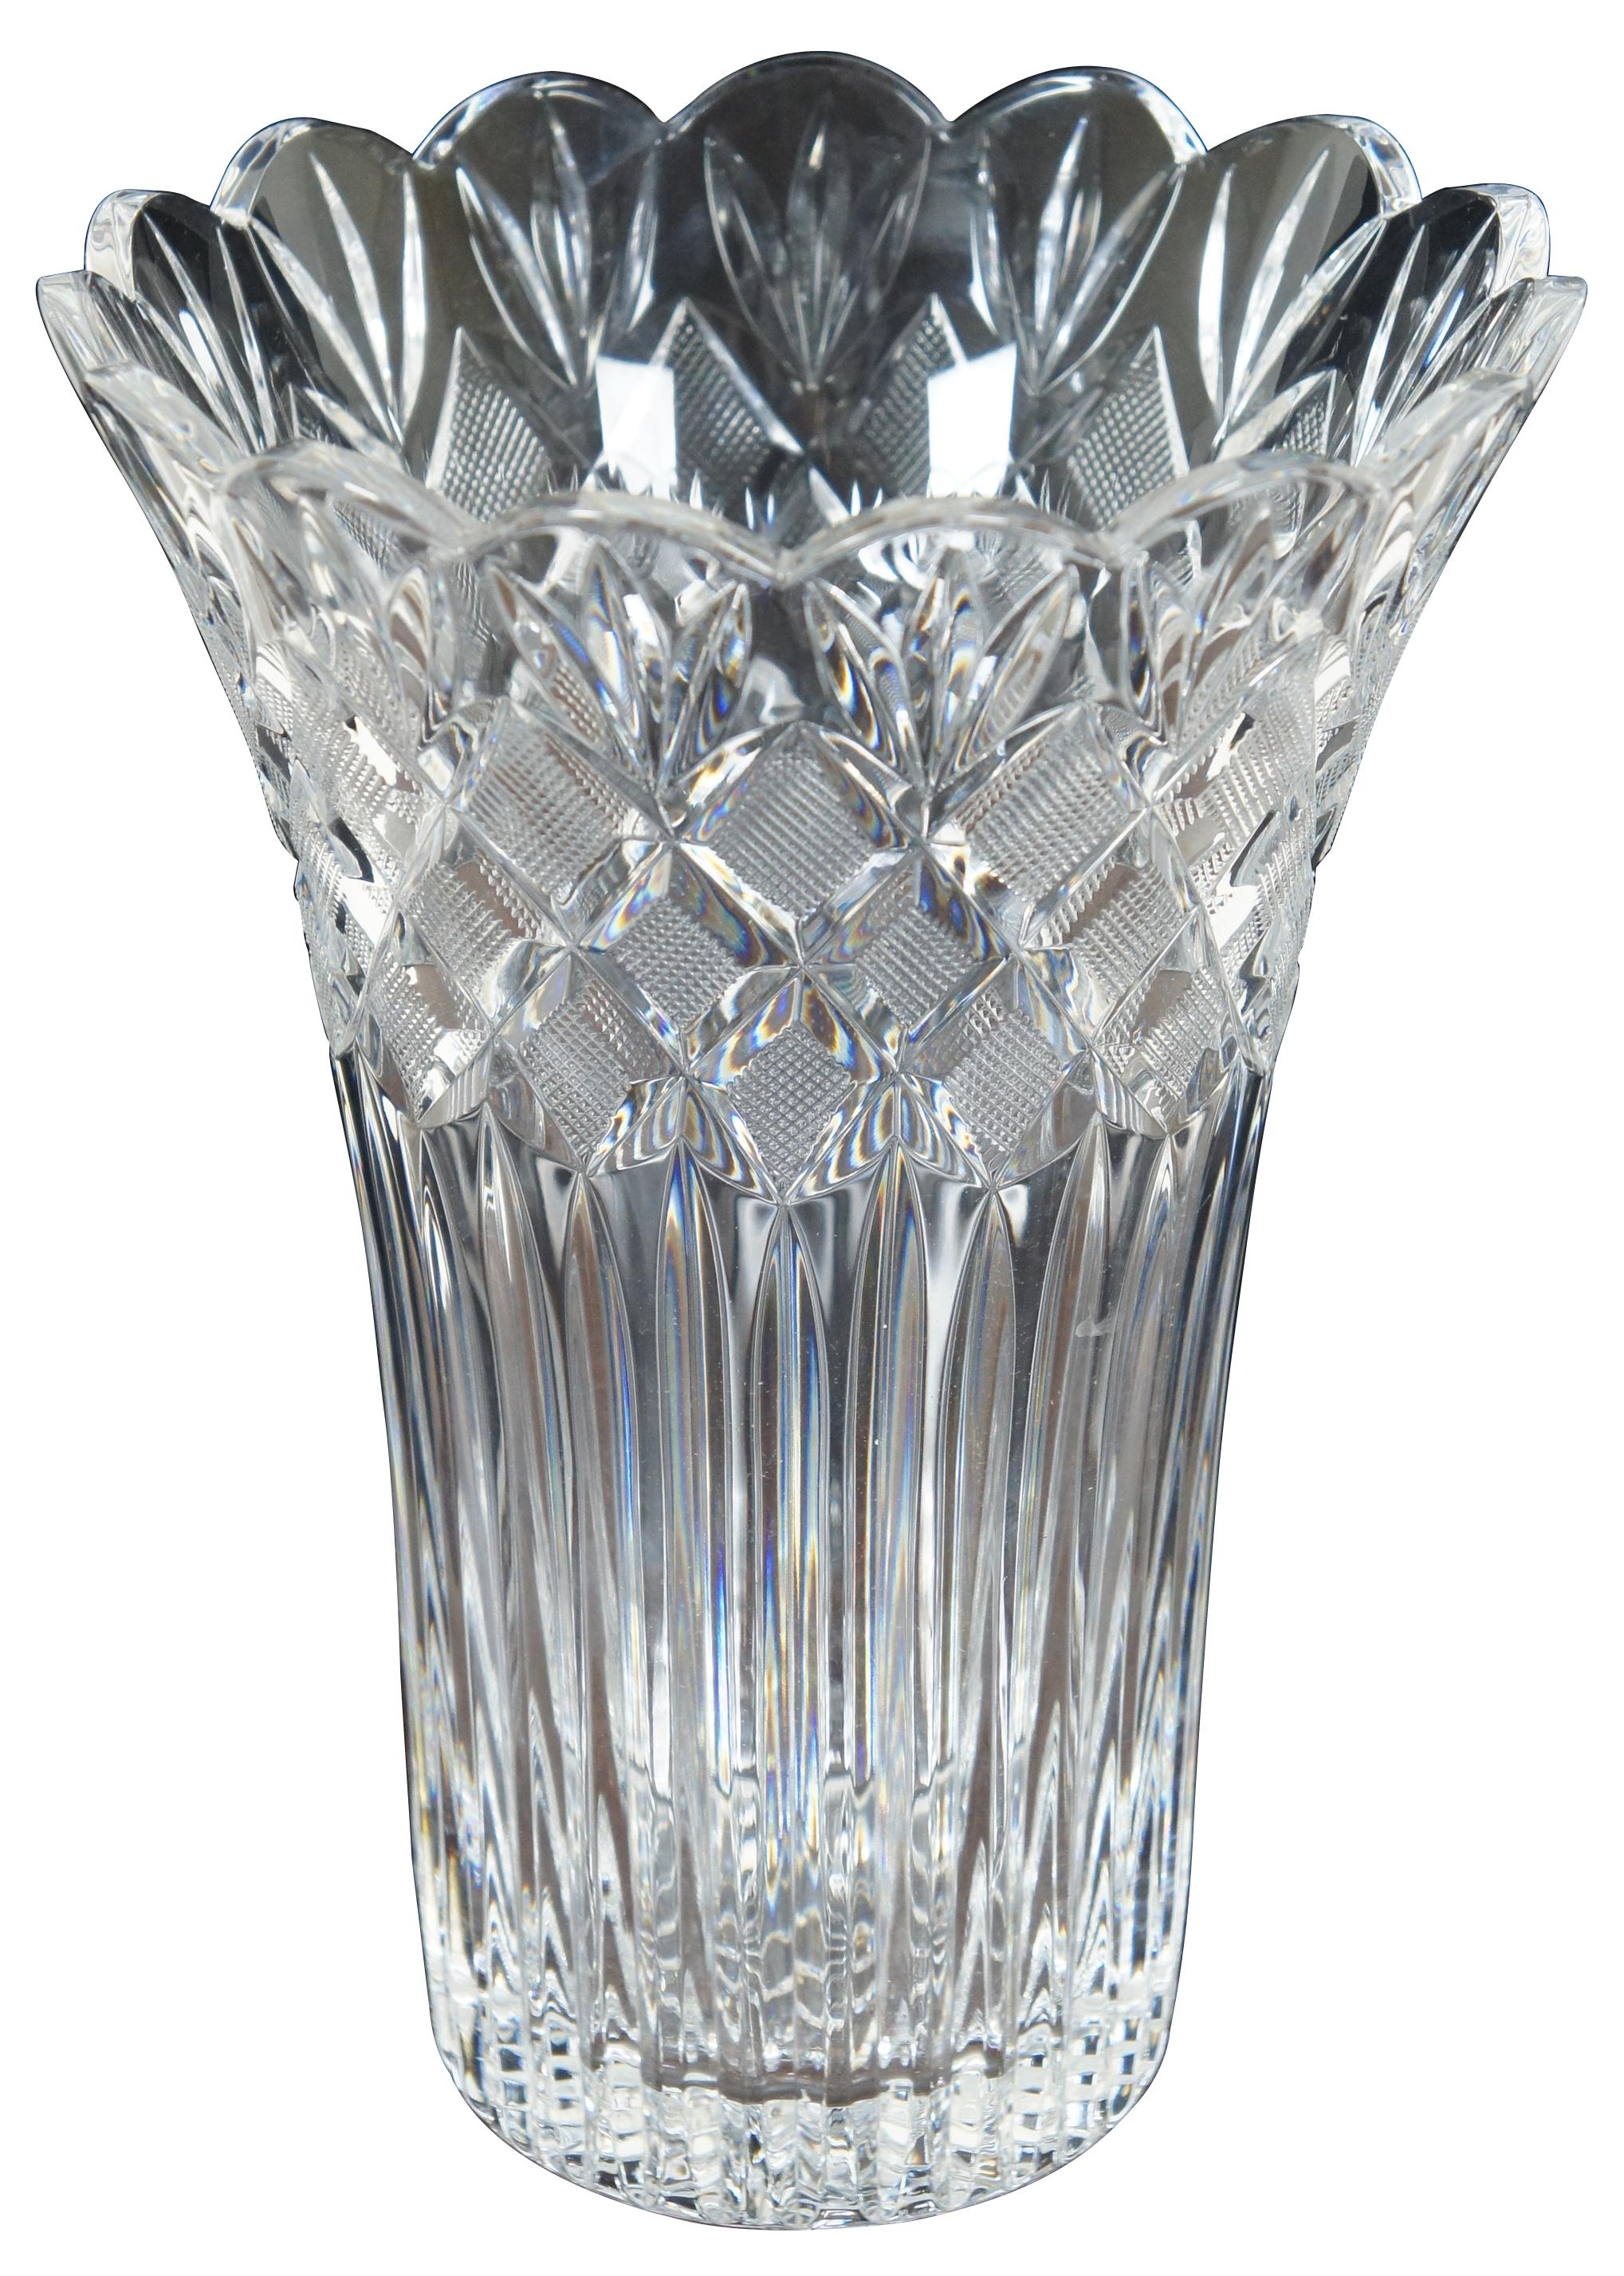 10 inch waterford crystal vase